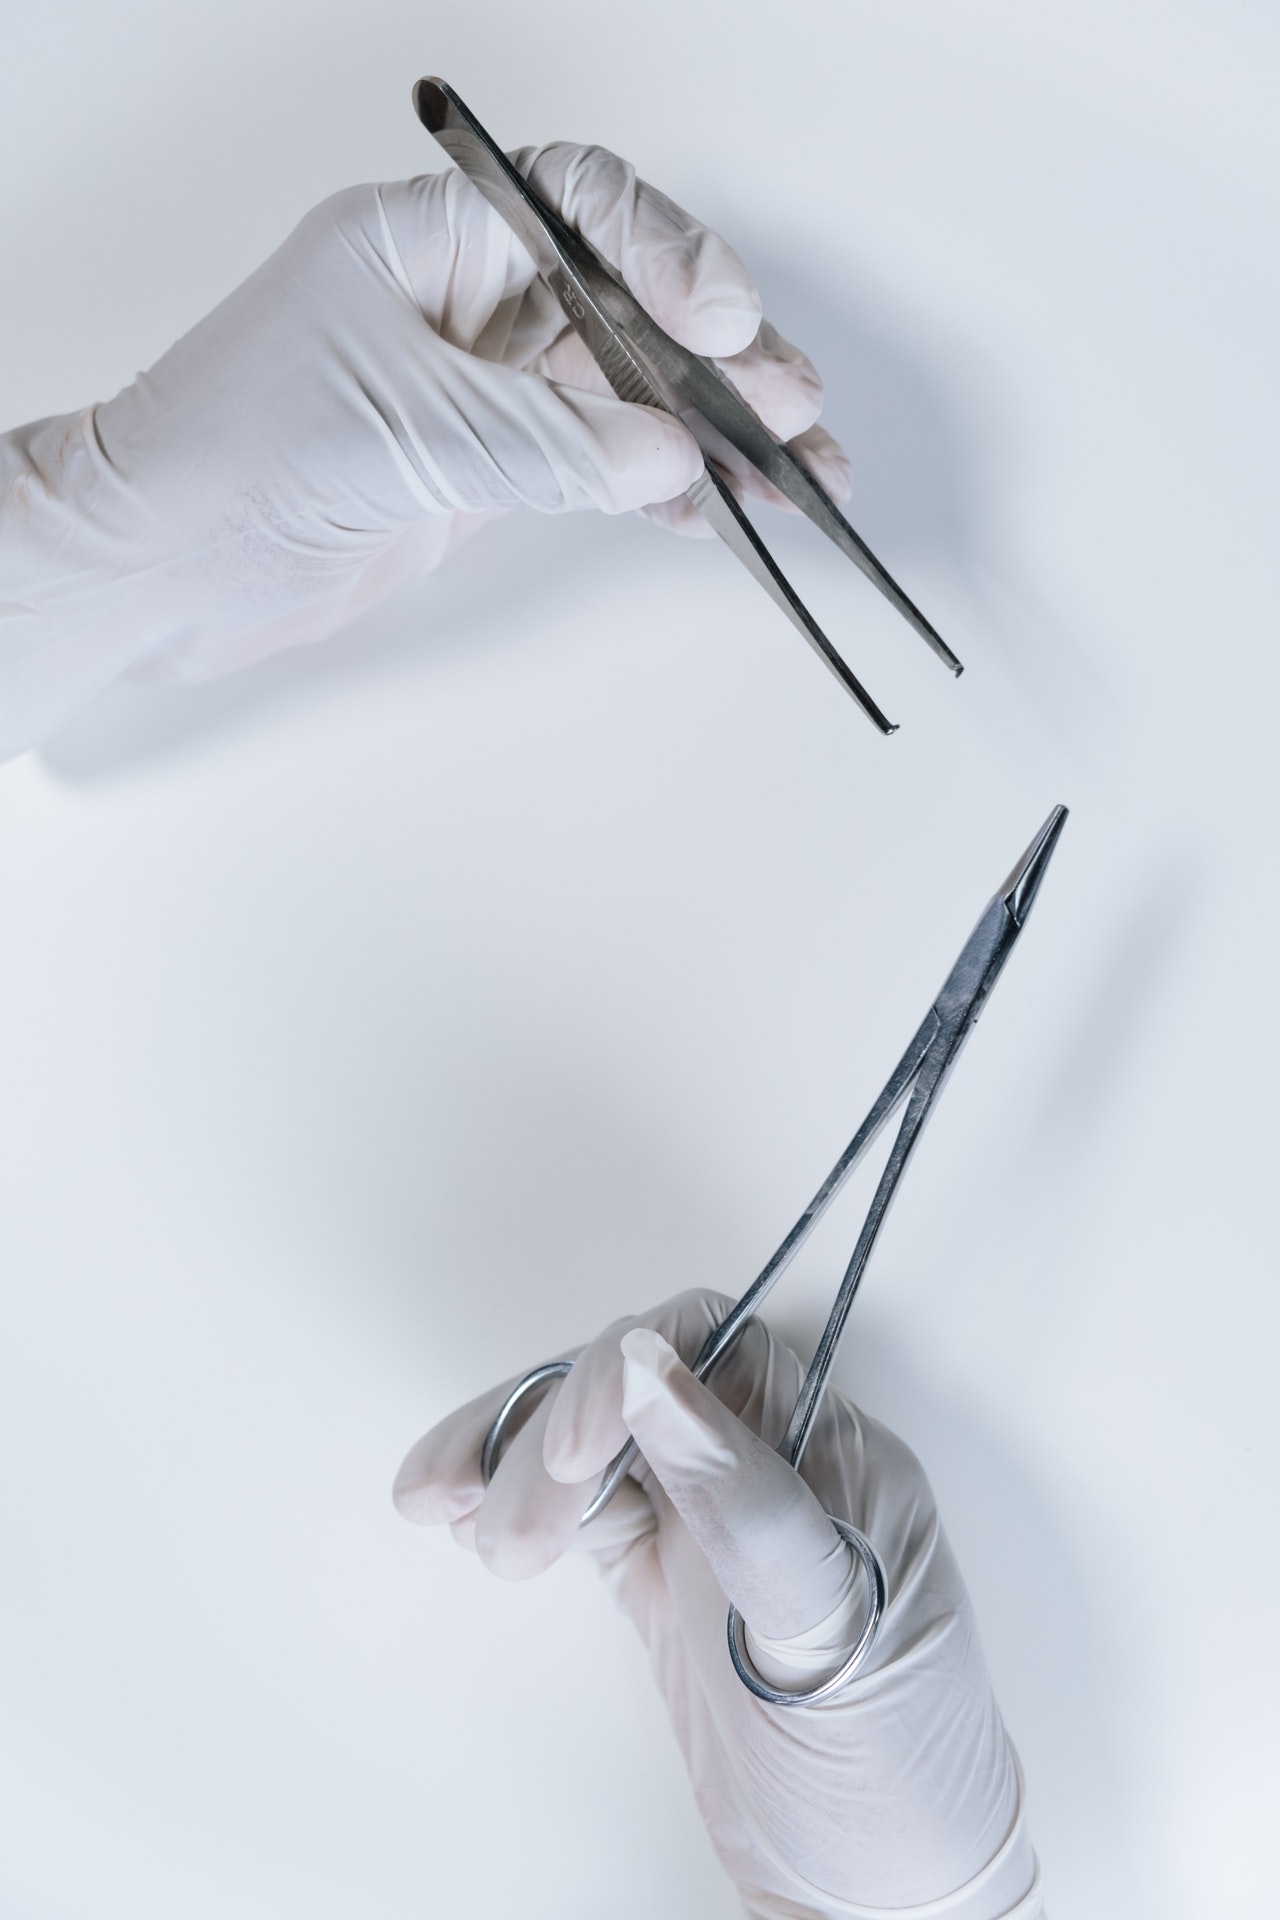 Jak dobierane są narzędzia chirurgiczne przed zabiegiem?